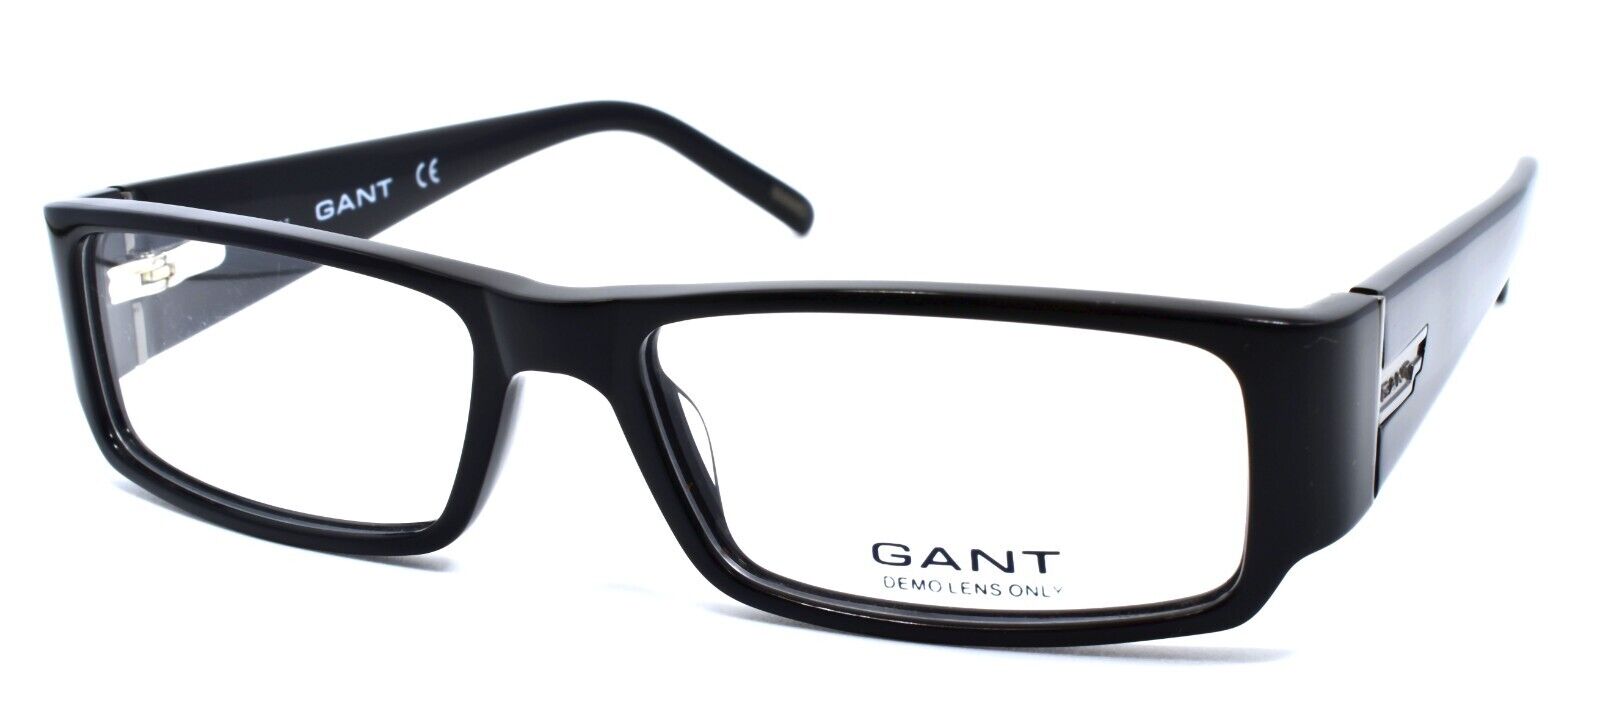 1-GANT G Lever BLK/BLK Eyeglasses Frames 52-15-135 Black-715583111301-IKSpecs